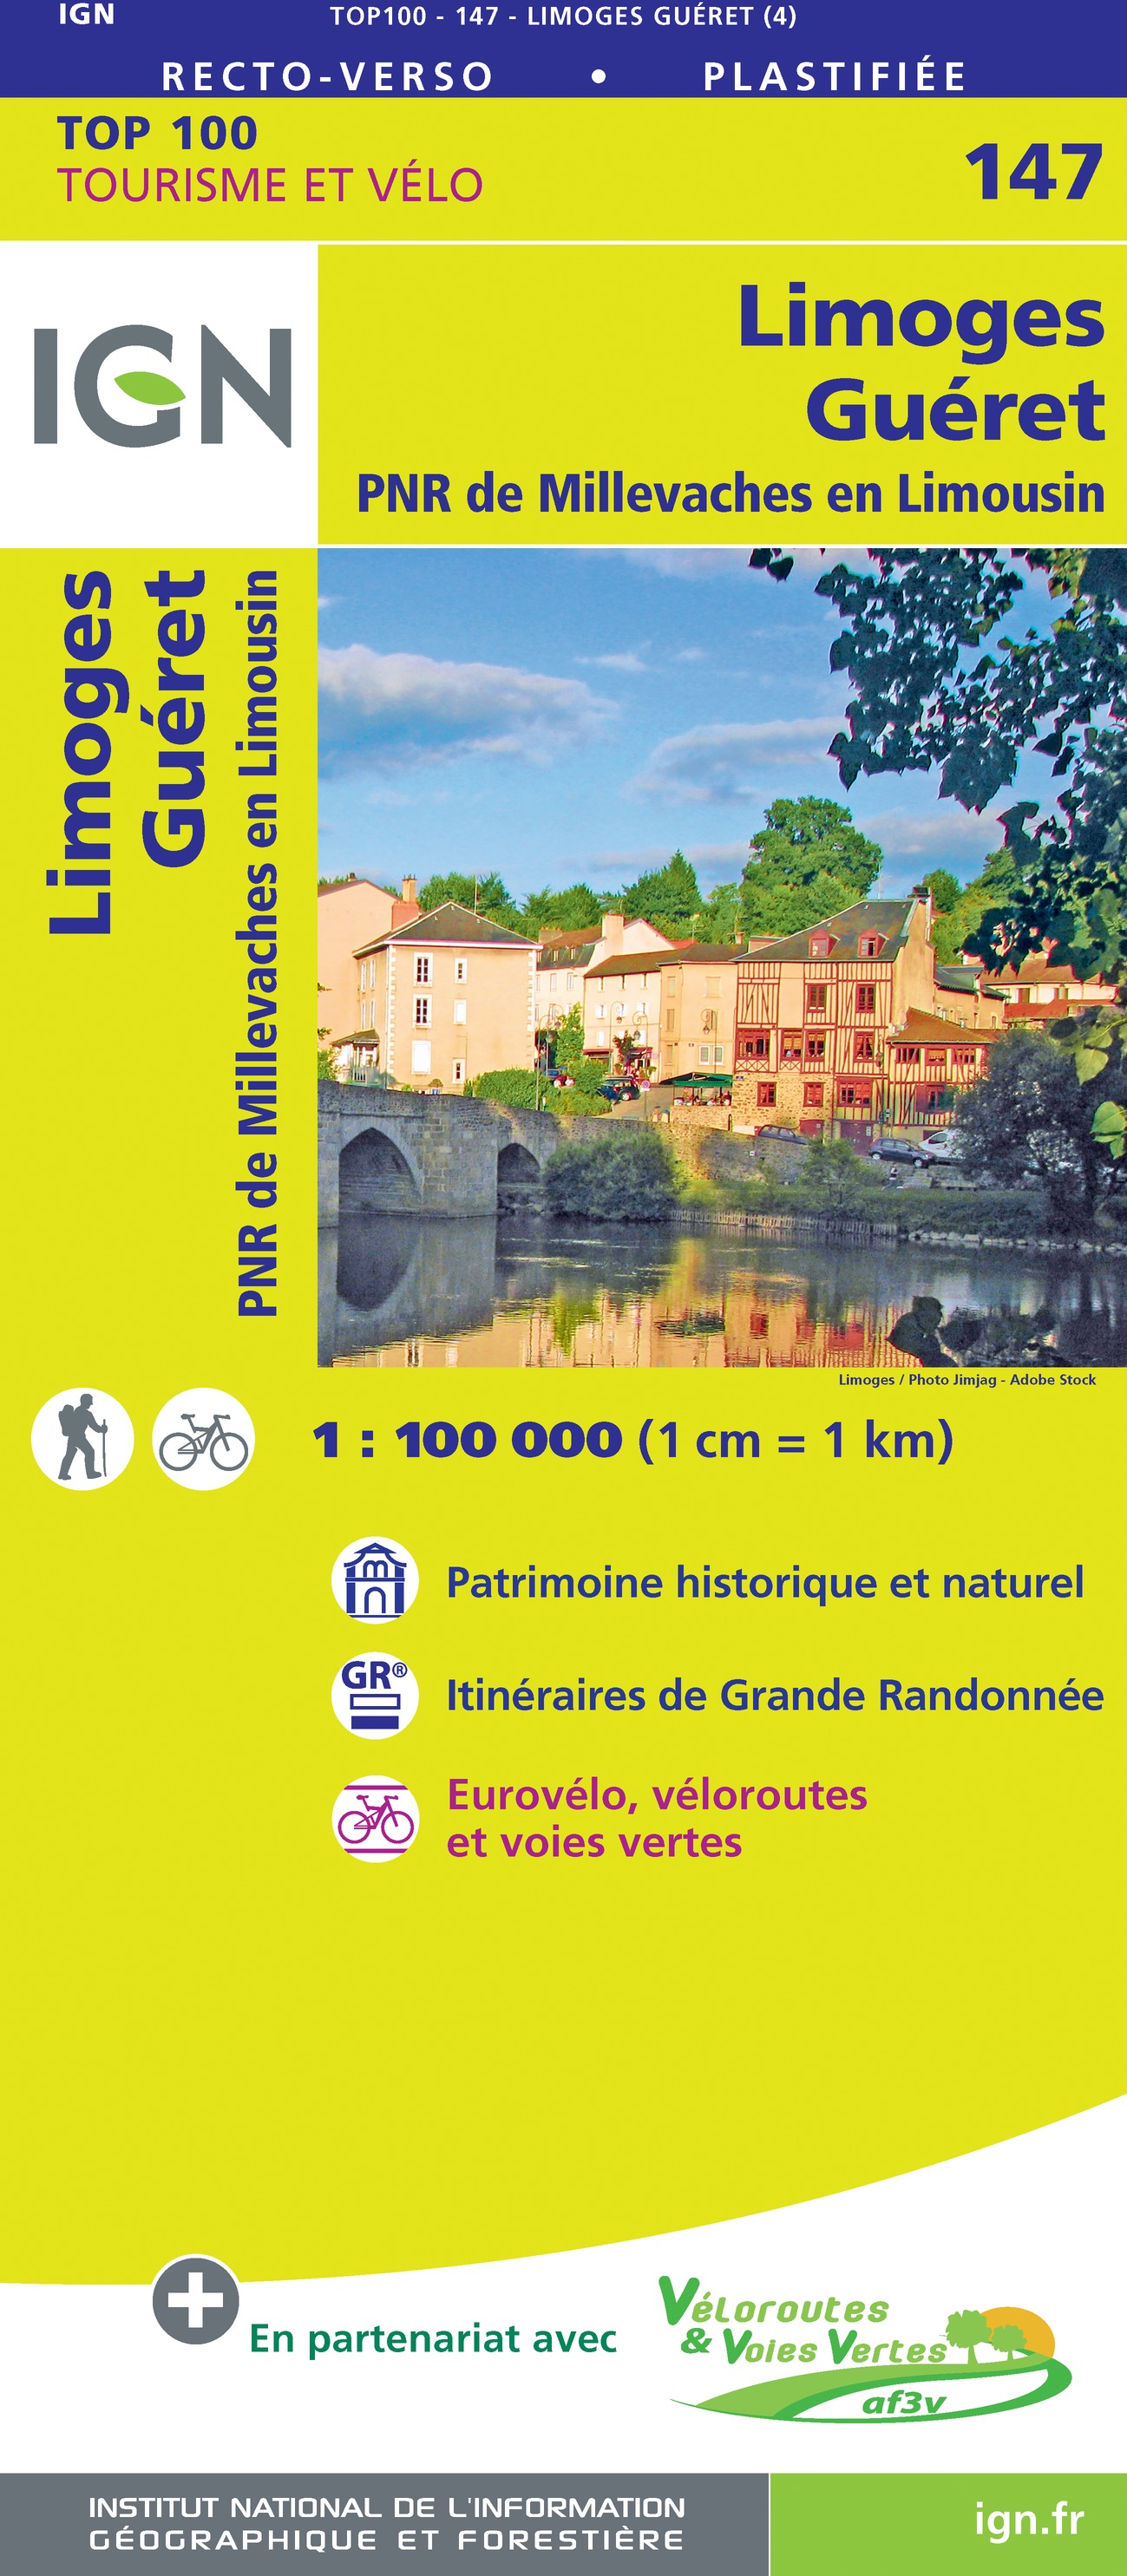 Online bestellen: Fietskaart - Wegenkaart - landkaart 147 Limoges - Gueret | IGN - Institut Géographique National